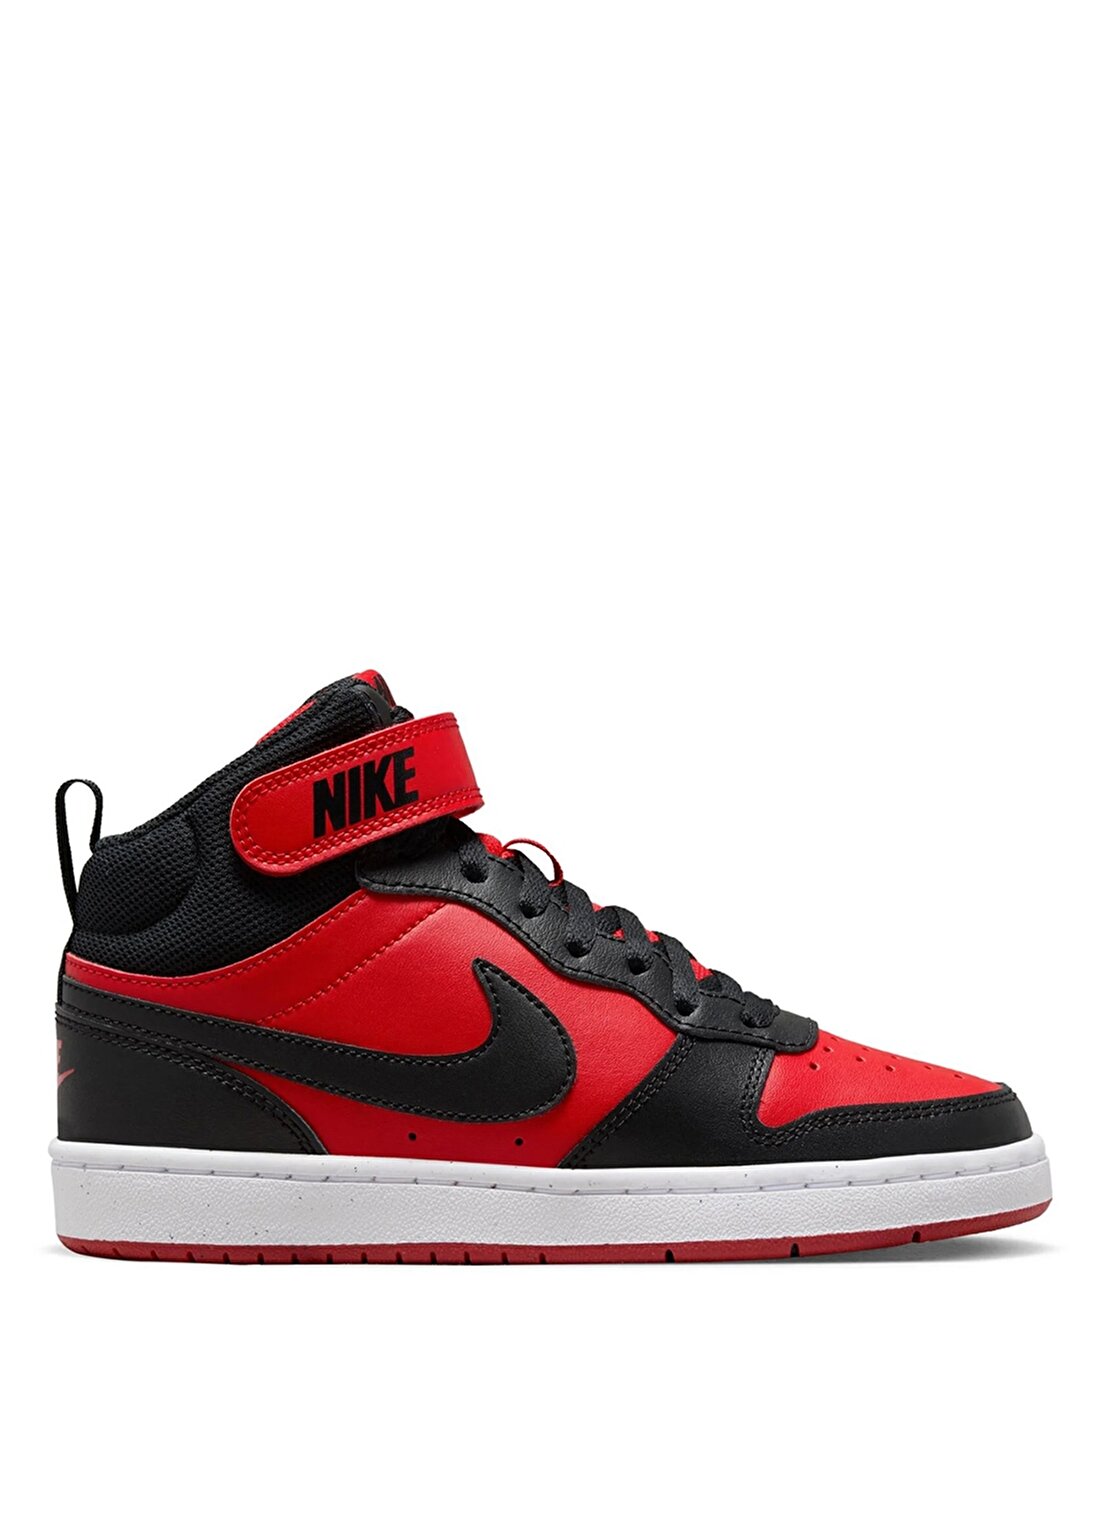 Nike Siyah - Kırmızı Erkek Çocuk Yürüyüş Ayakkabısı CD7782-602-COURT BOROUGH MID 2 (GS)